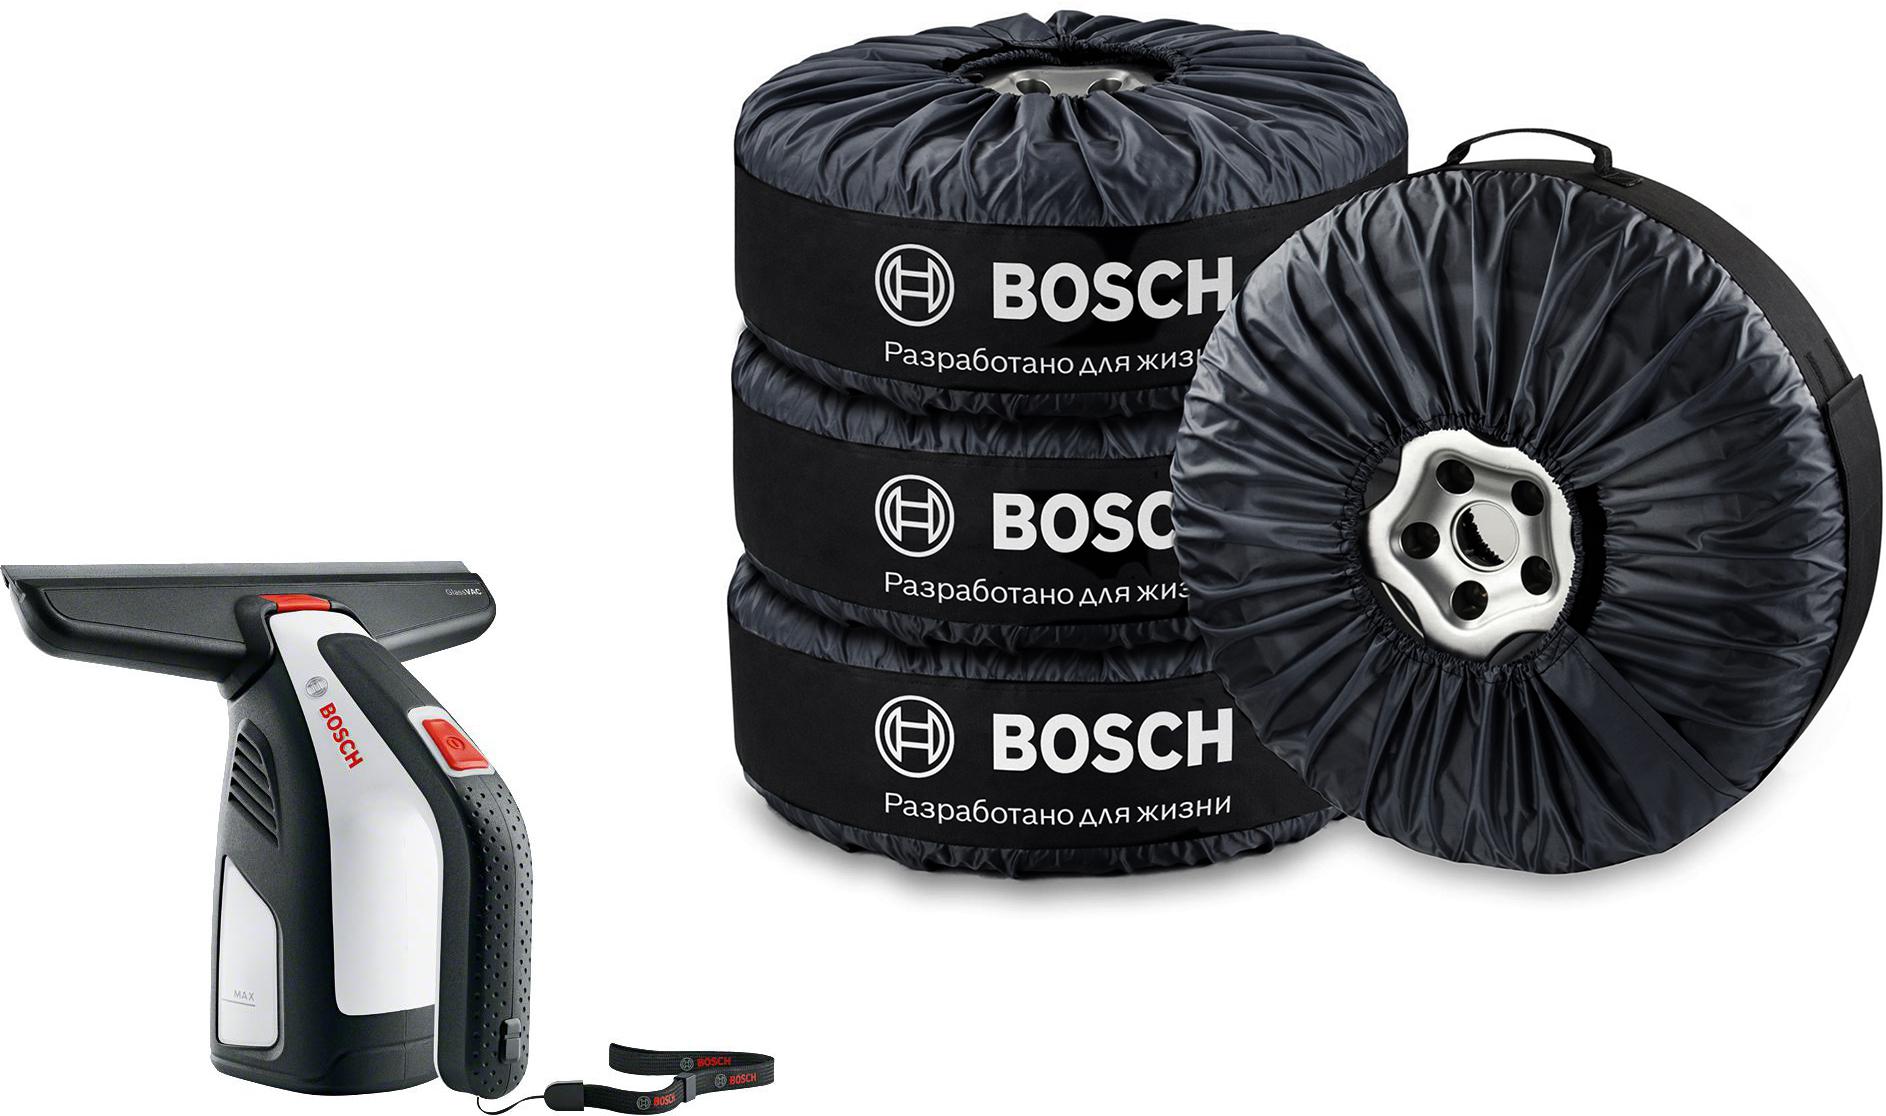 

Набор Bosch Стеклоочиститель glassvac (06008b7000) +Чехлы для колес 1619m00jv1, Стеклоочиститель glassvac (06008b7000) +Чехлы для колес 1619m00jv1